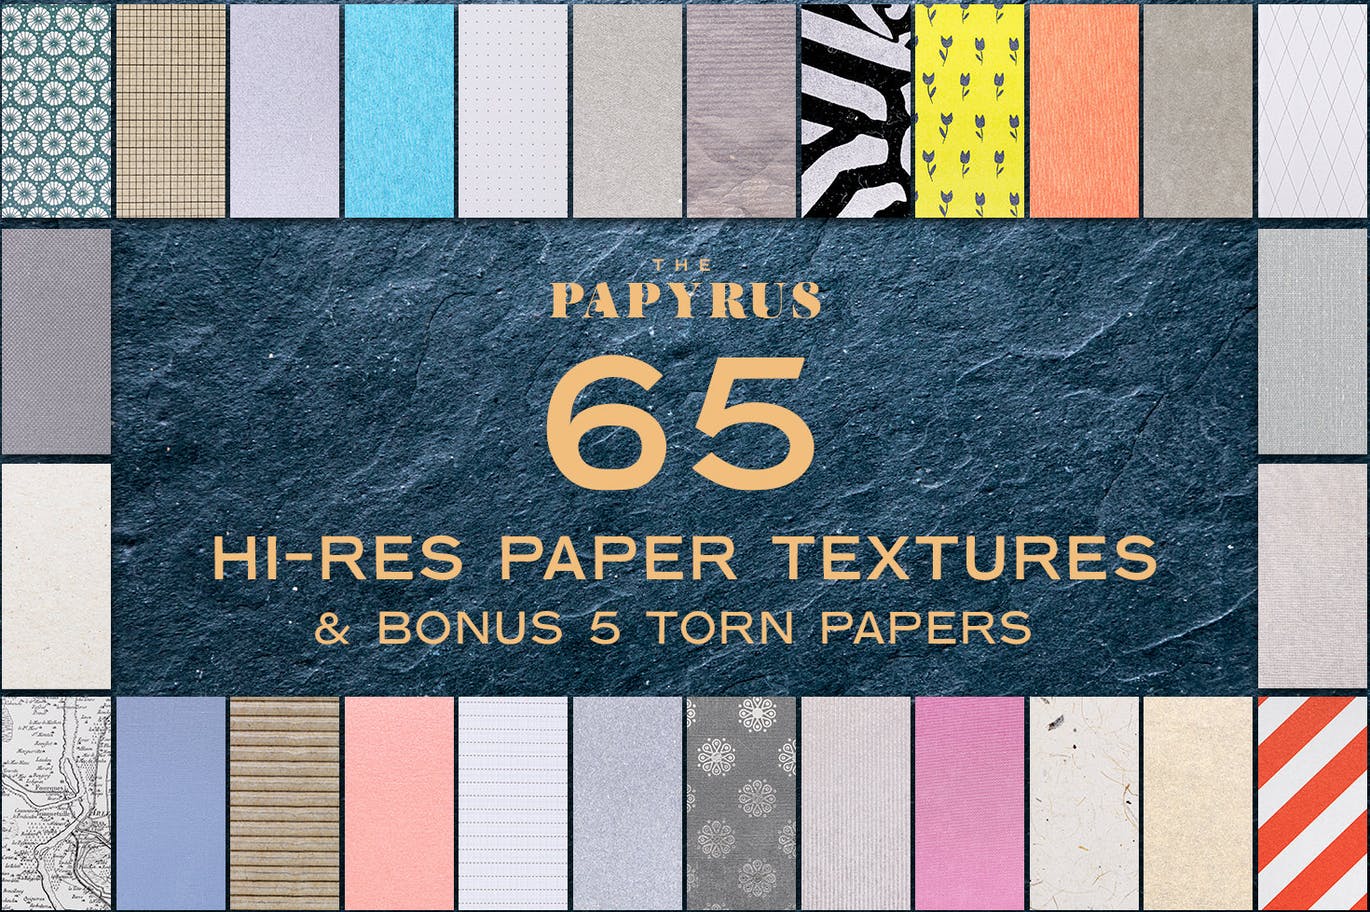 65个莎草纸纸张纹理合集 The Papyrus – 65 Paper Textures 图片素材 第2张